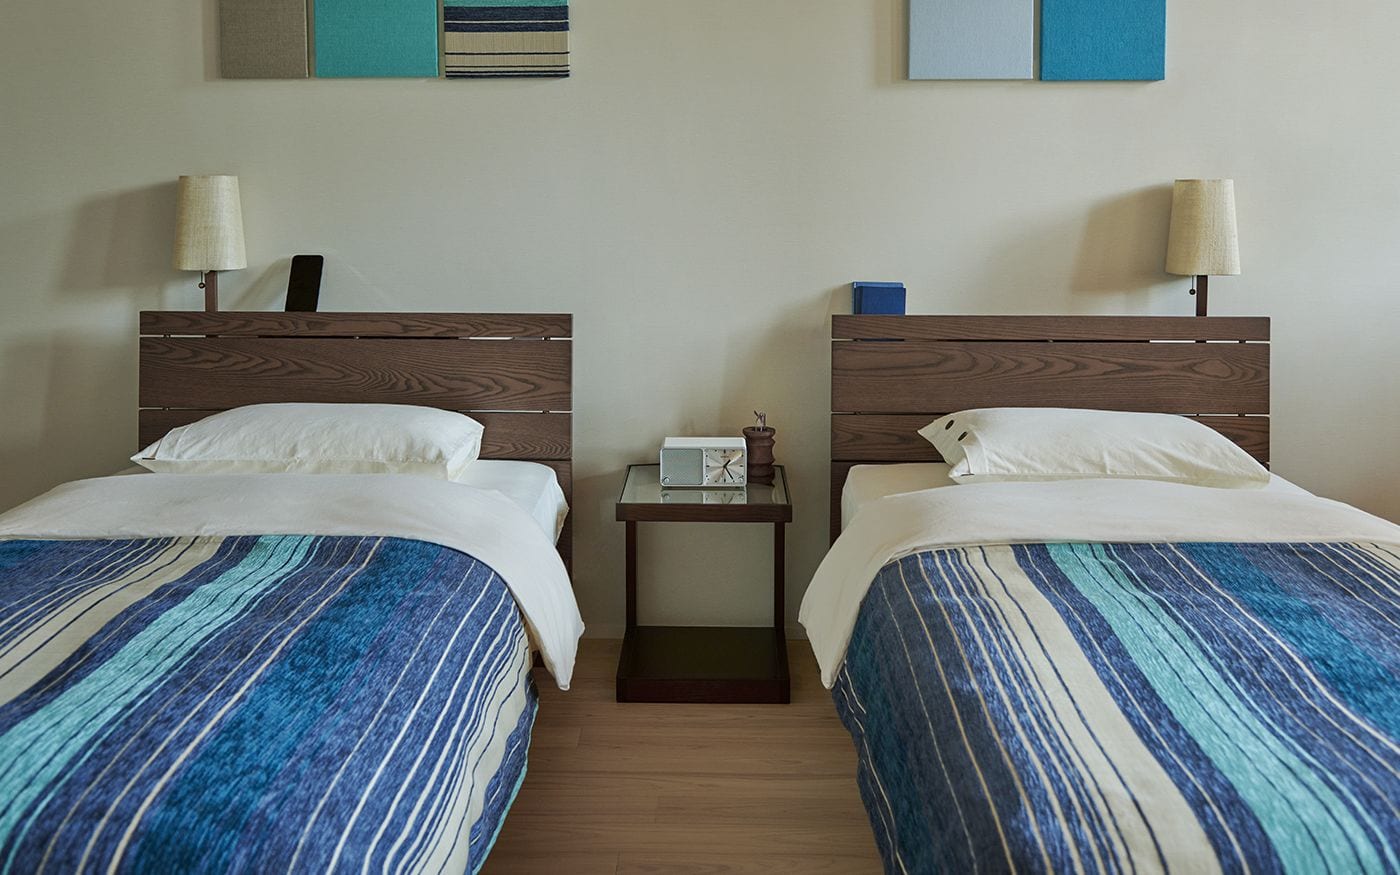 リゾートホテル風な寝室を再現するベッドスプレッド